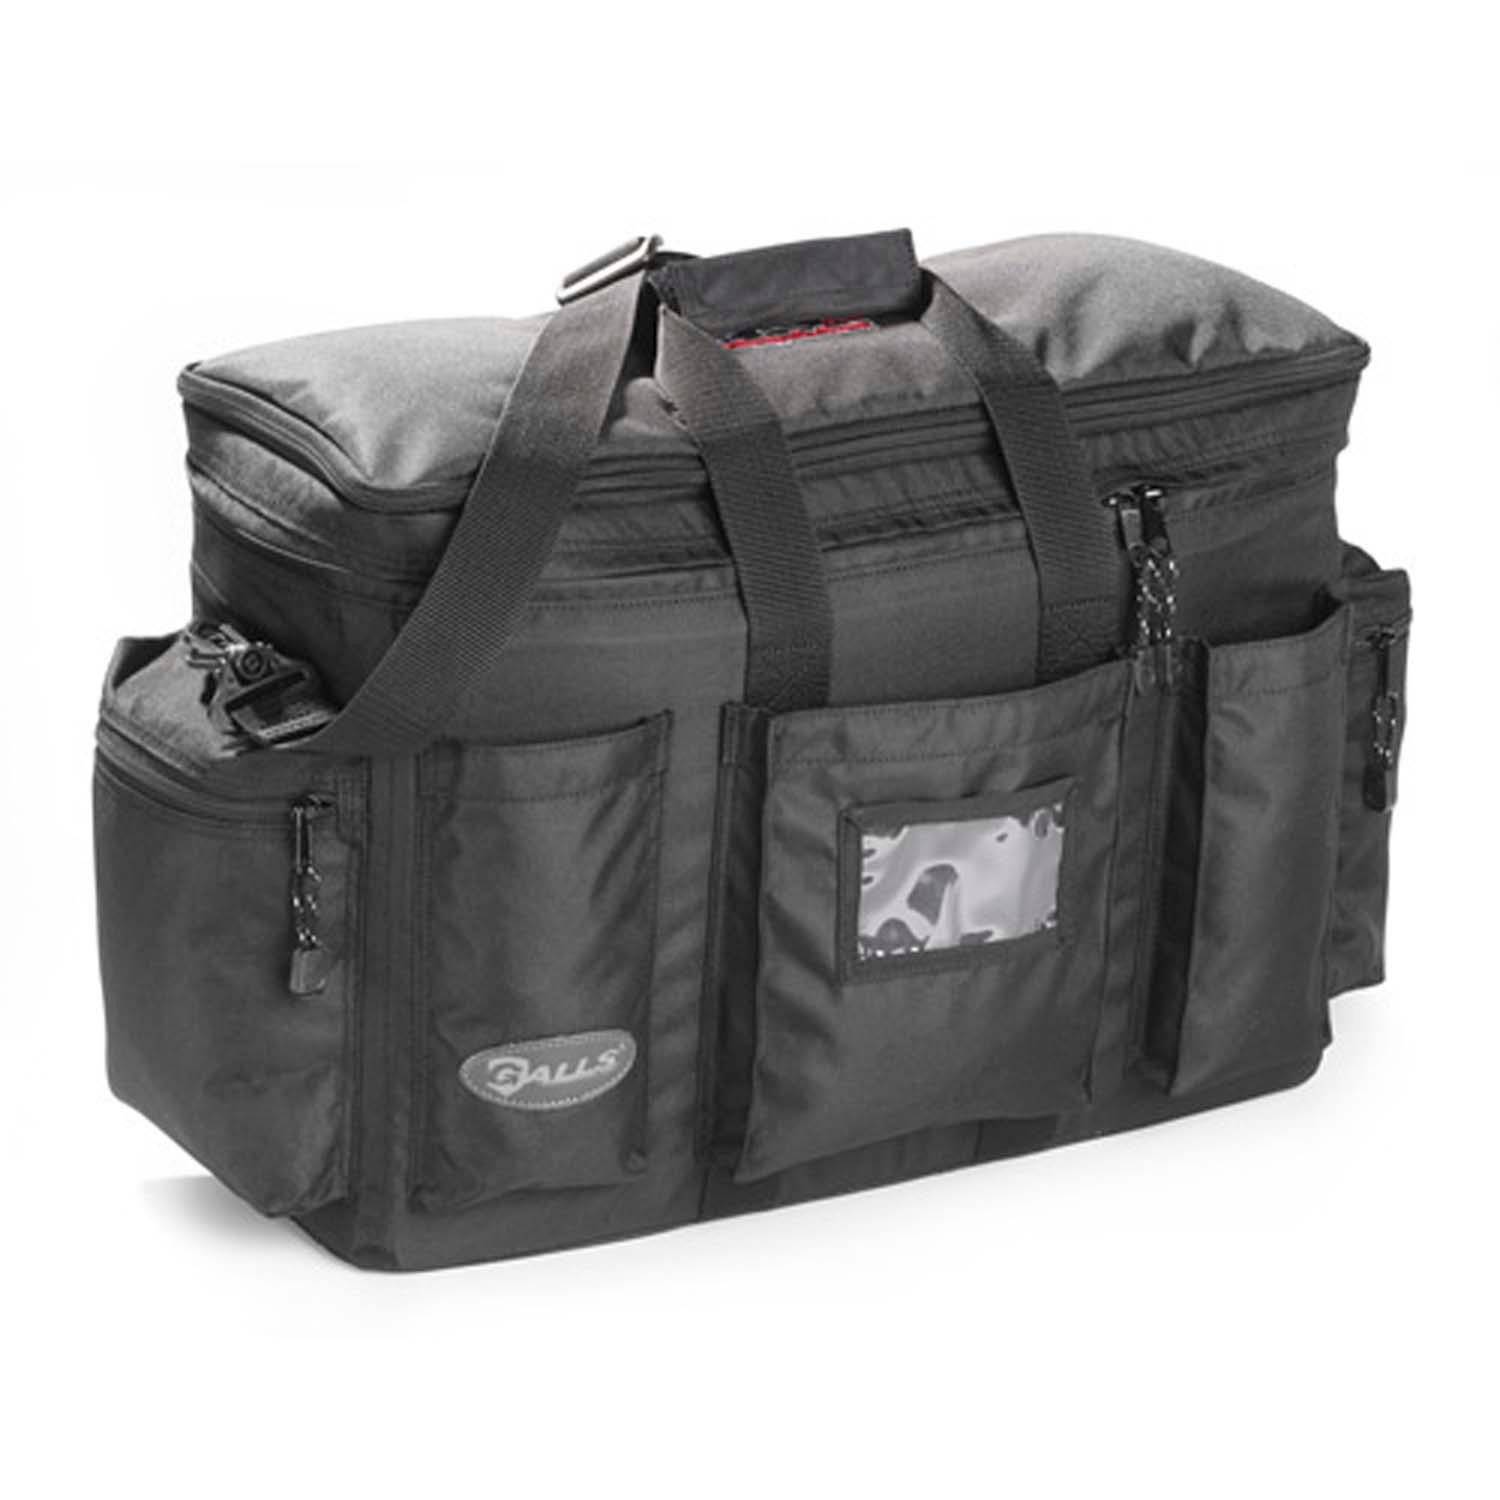 Rugged Radios Gear-Bag Ballistic Nylon Large Gear Bag